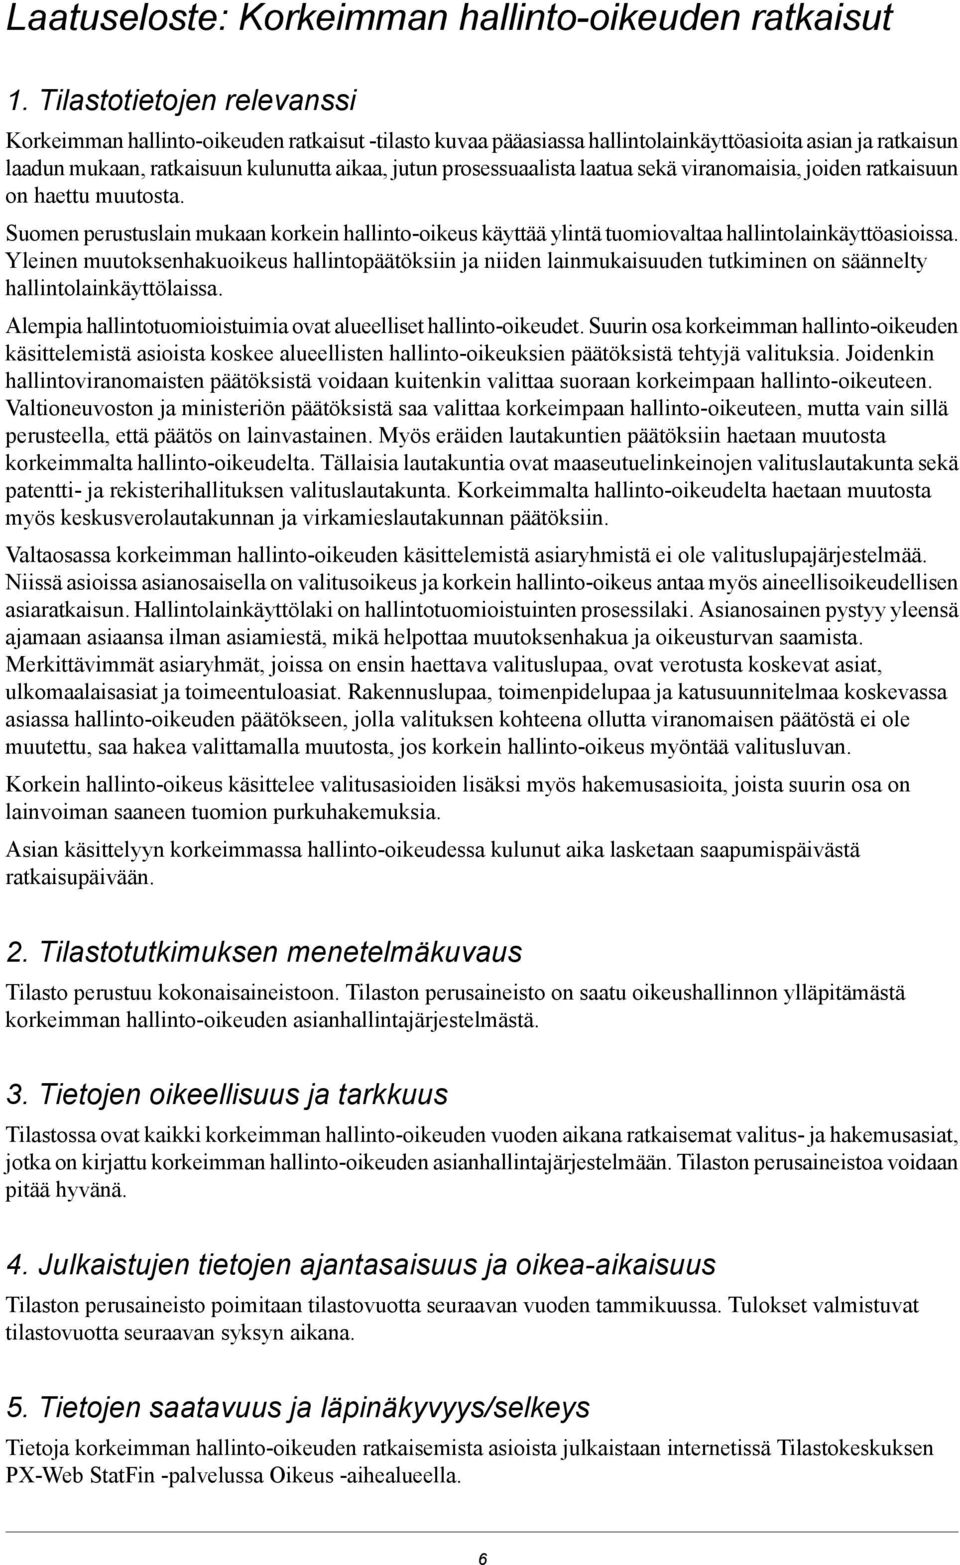 prosessuaalista laatua sekä viranomaisia, joiden ratkaisuun on haettu muutosta. Suomen perustuslain mukaan korkein hallinto-oikeus käyttää ylintä tuomiovaltaa hallintolainkäyttöasioissa.